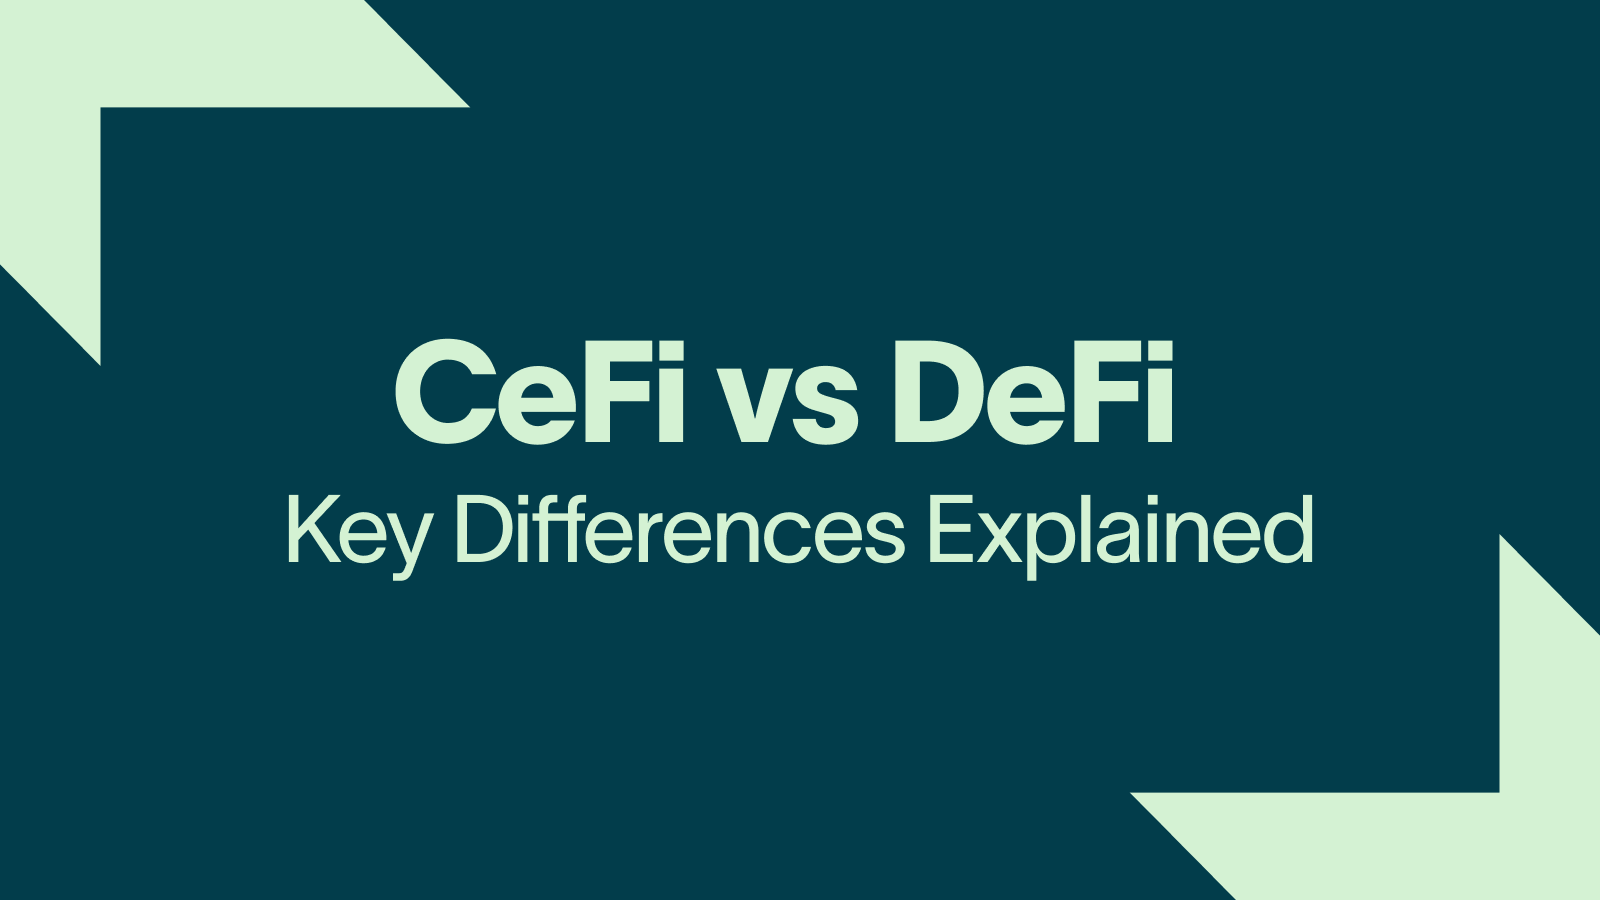 CeFi vs DeFi  Key Differences Explained (1)